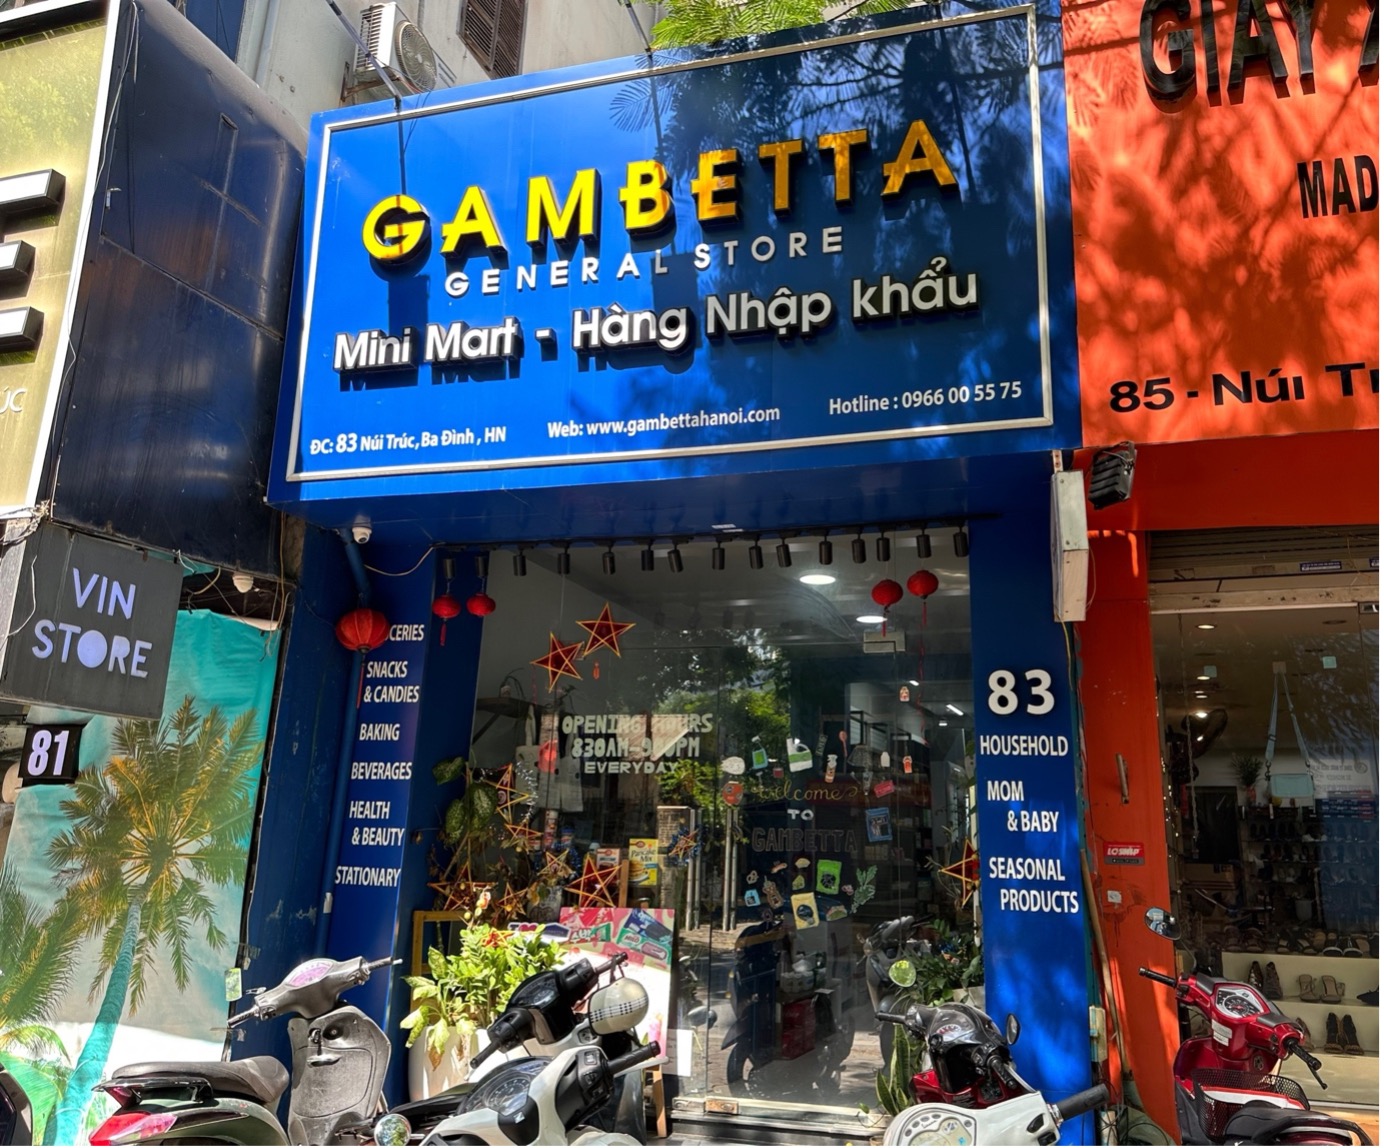 Cửa hàng Gambetta có đang coi thường pháp luật?